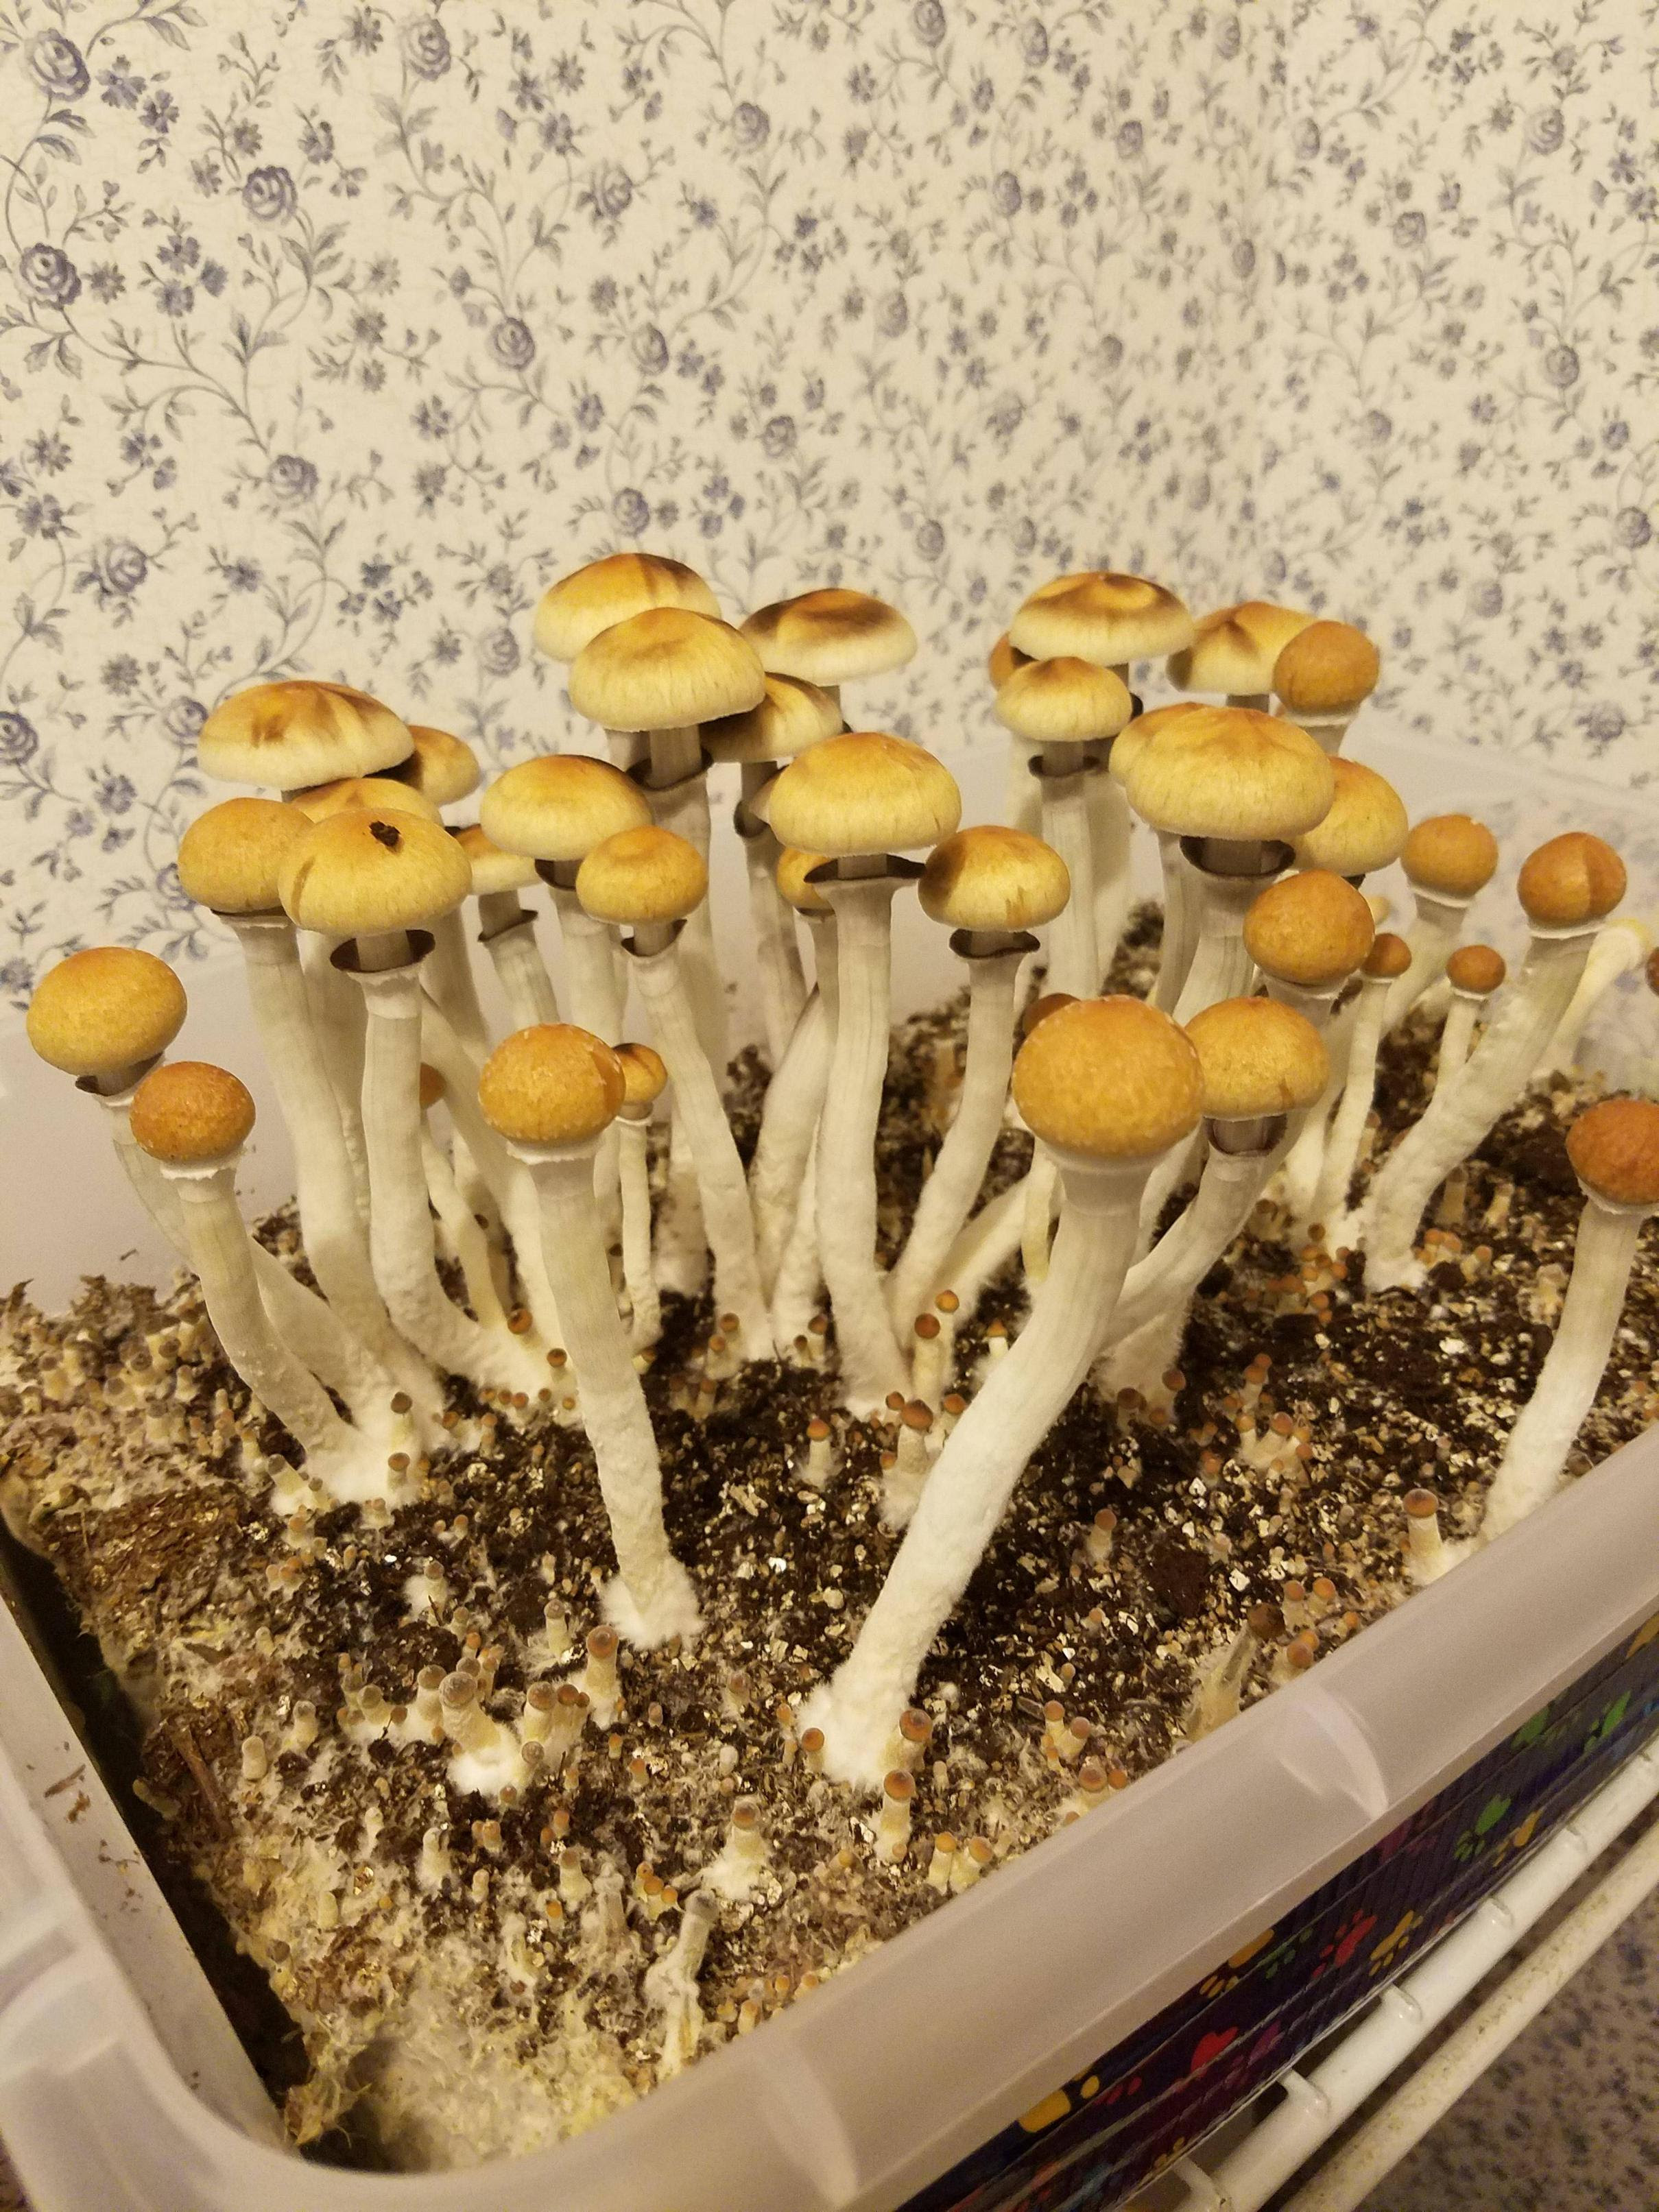 Growing shrooms